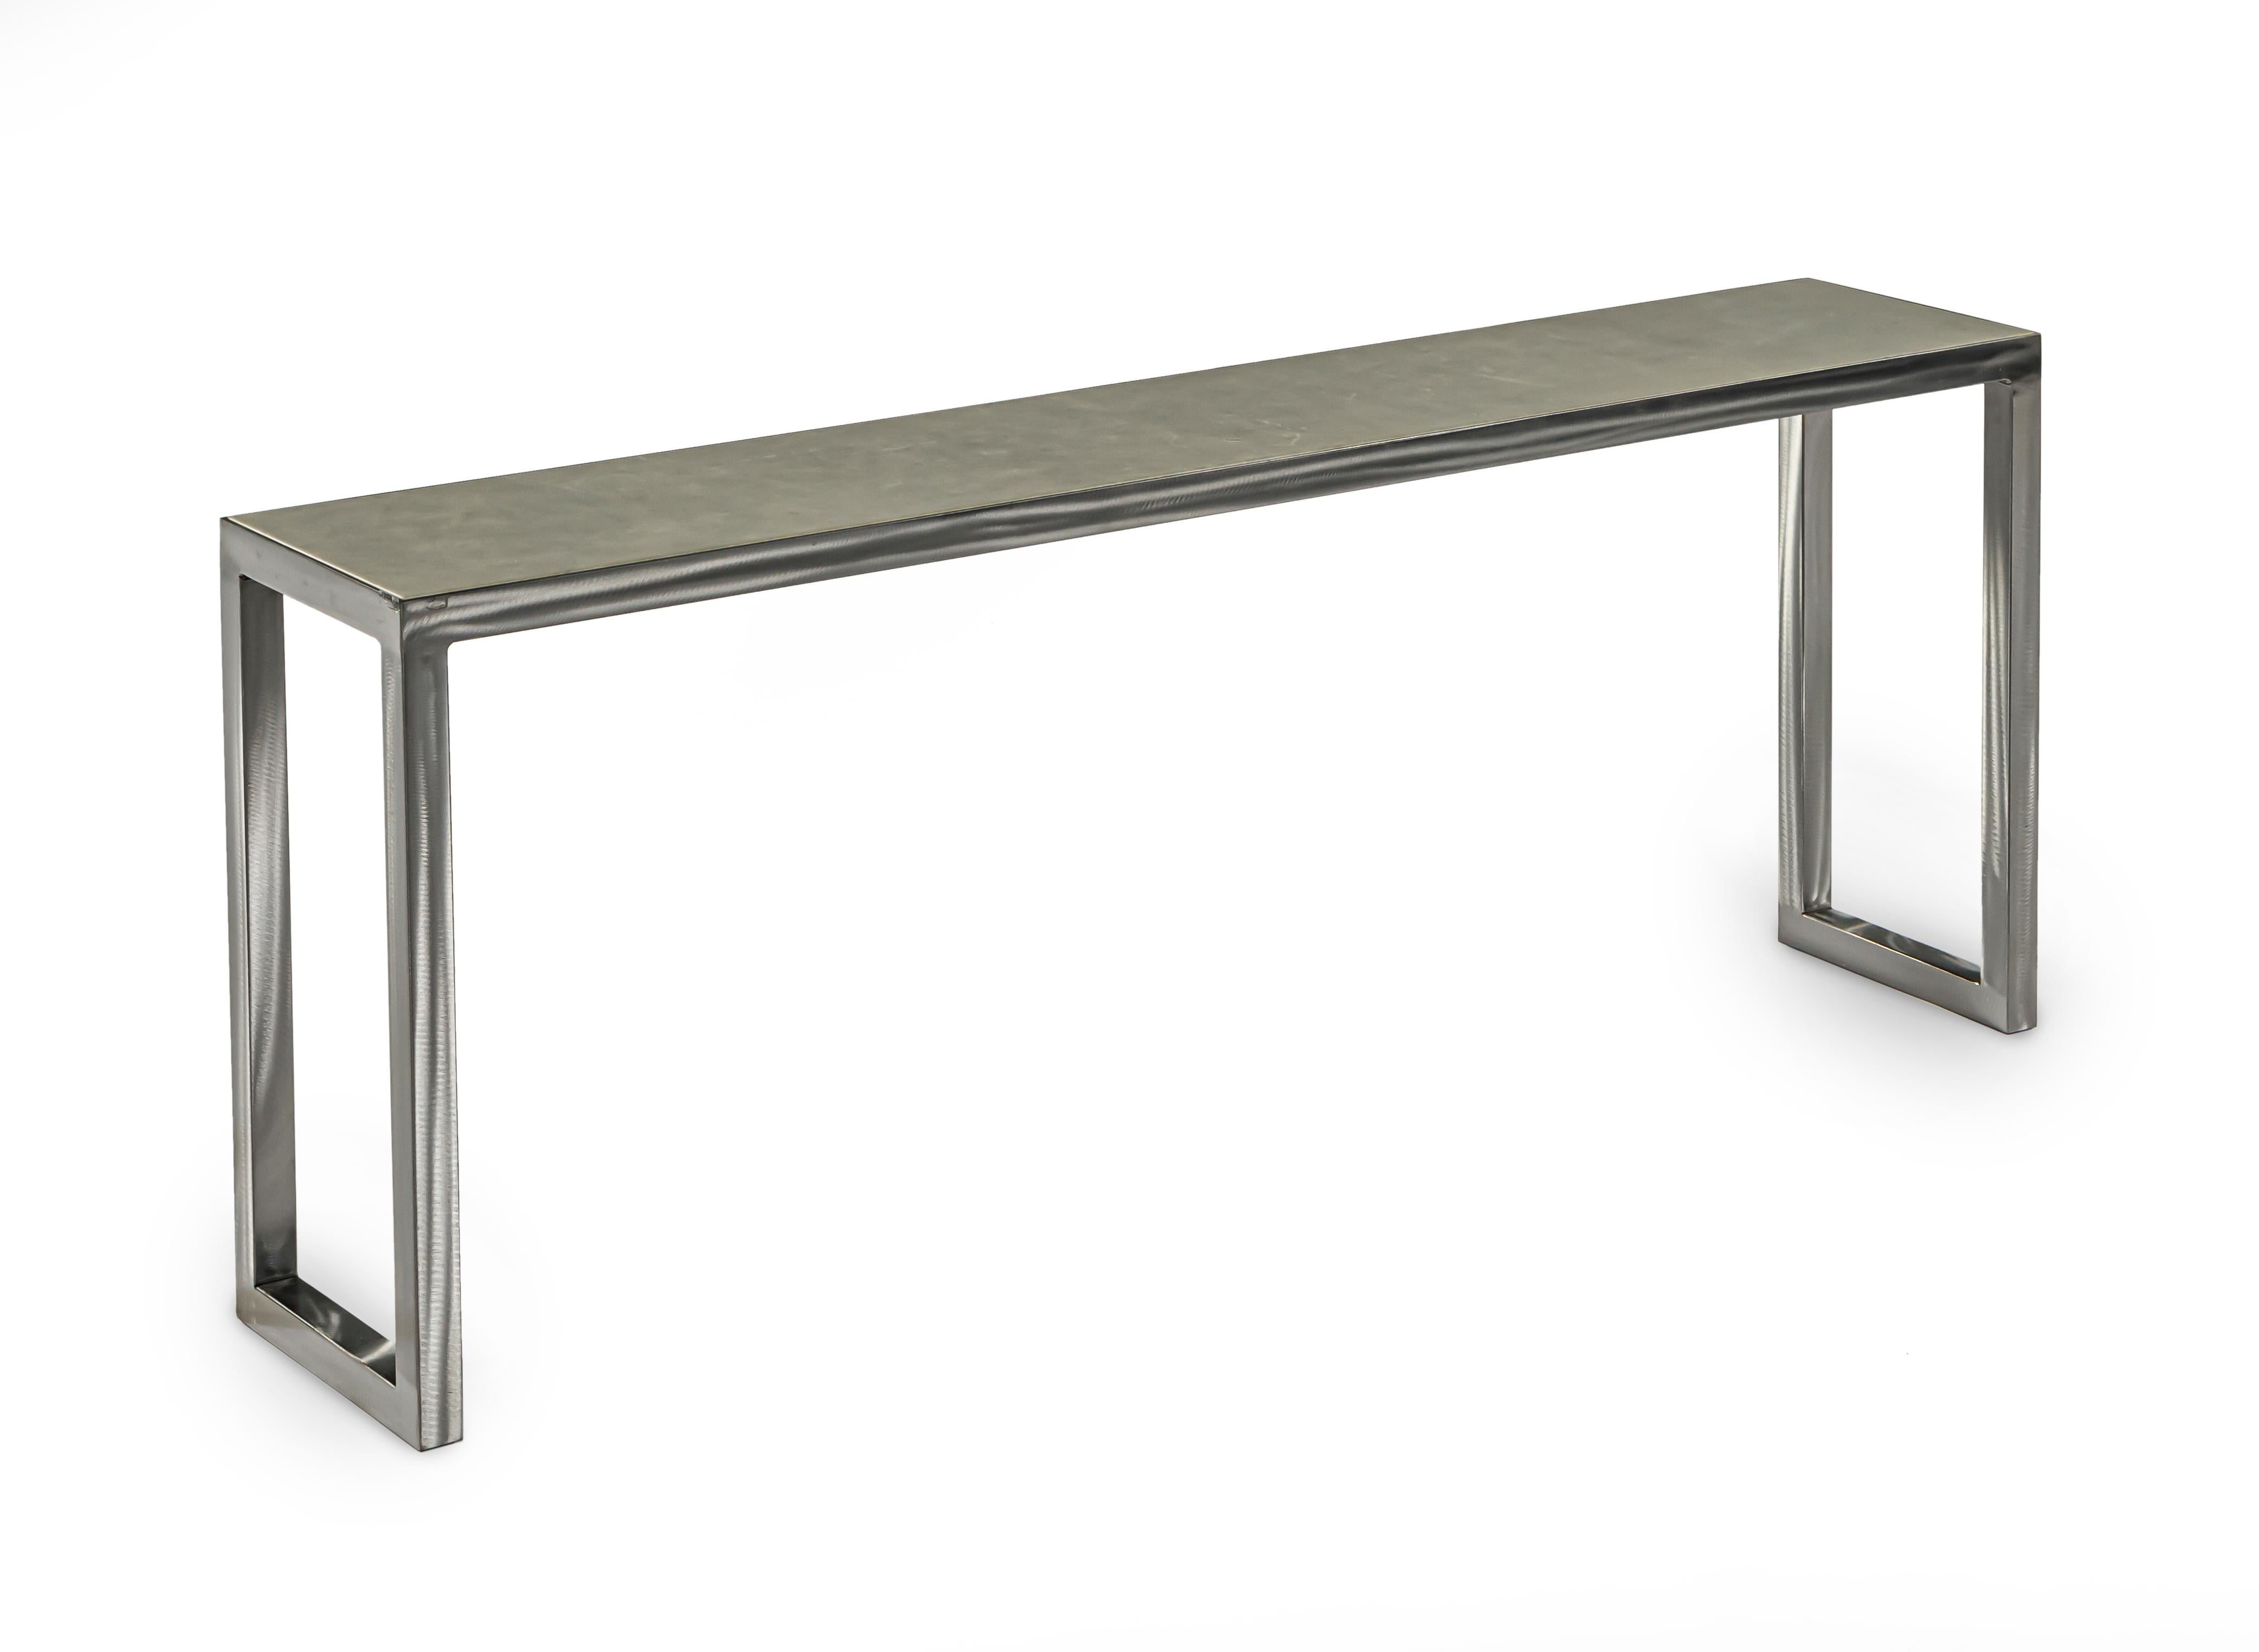 Table console à structure métallique non finie, plateau en cuir gris.